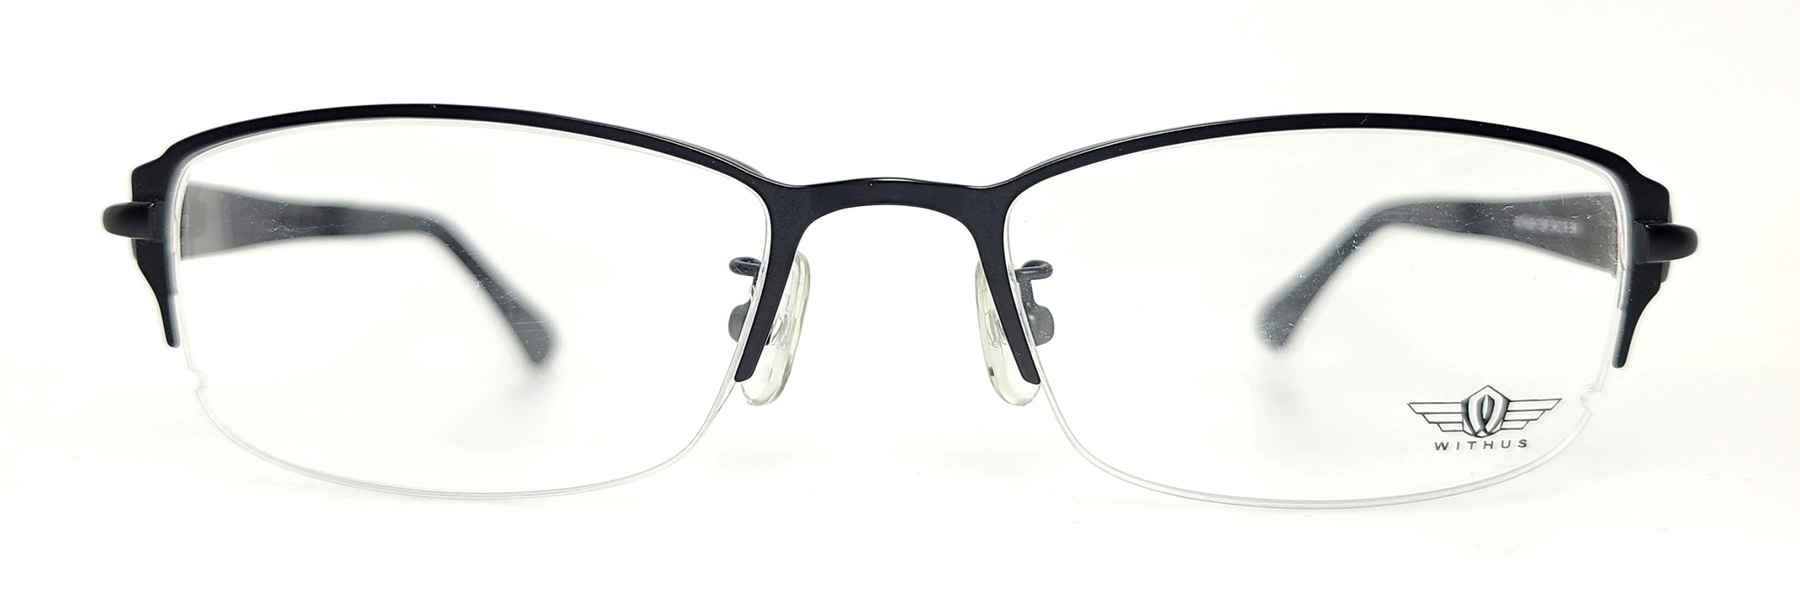 WITHUS-7287, Korean glasses, sunglasses, eyeglasses, glasses